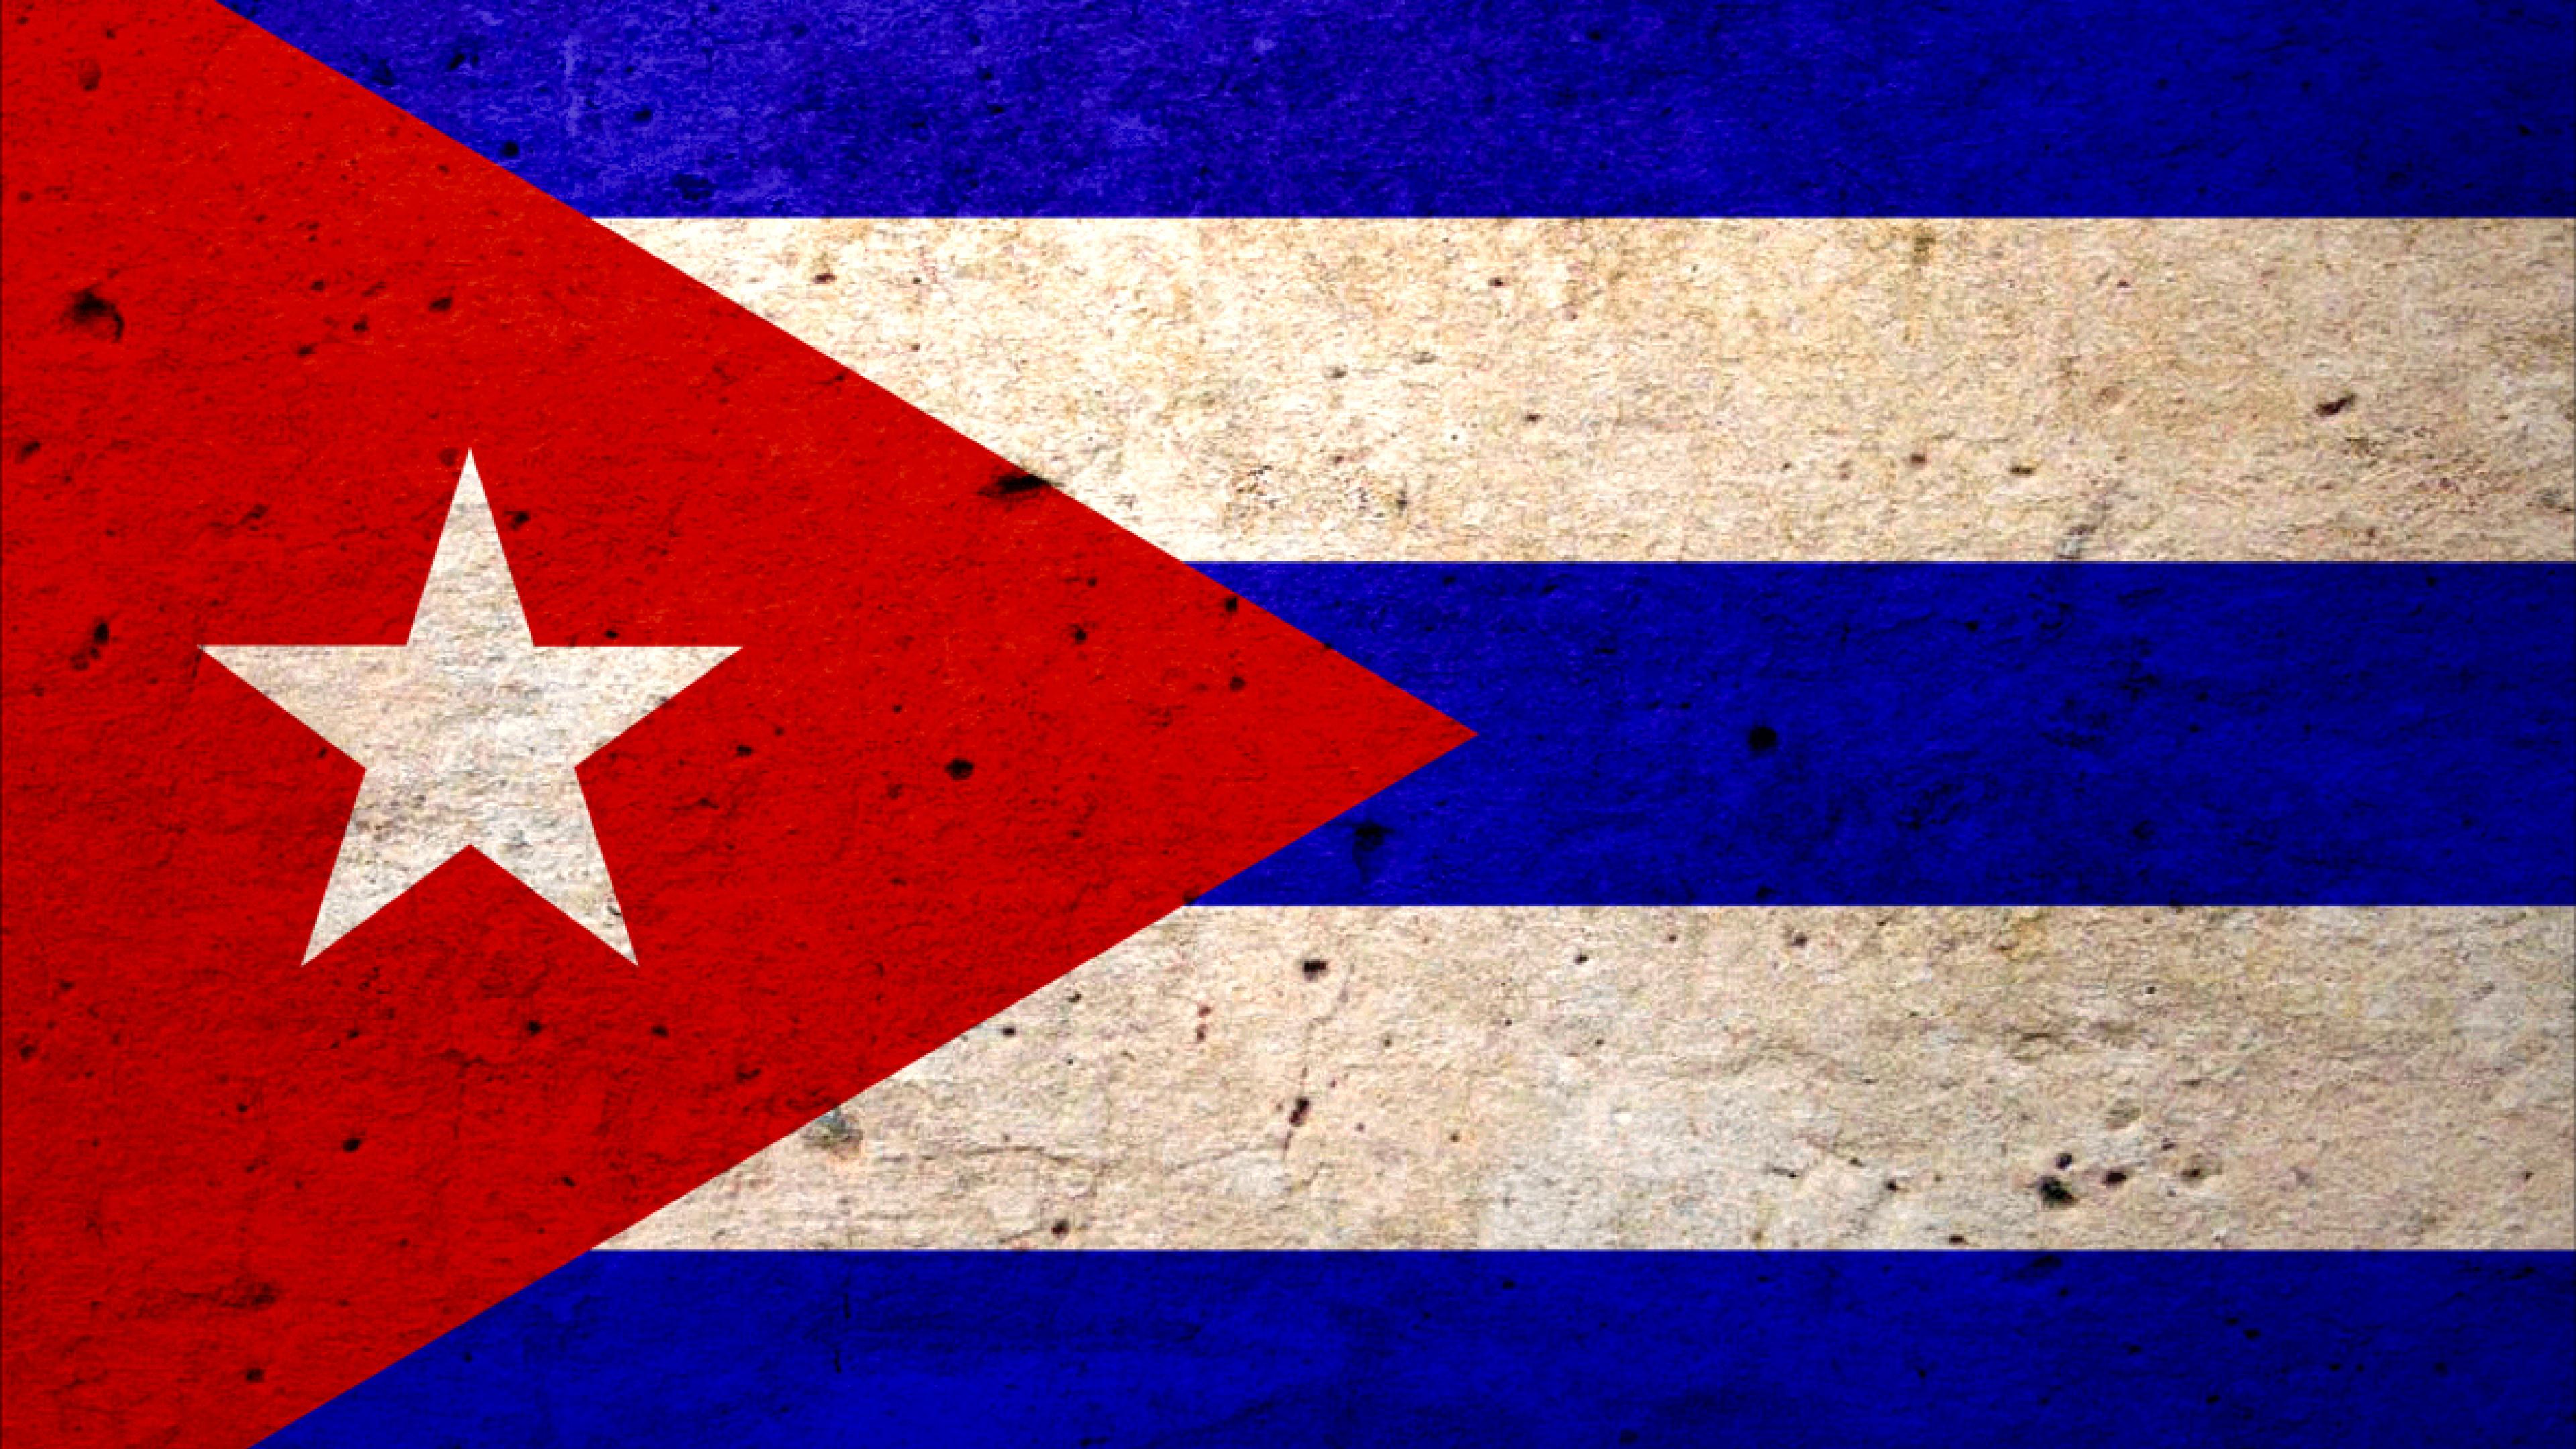 Free download flags cuba cuban flag 9J8x [3840x2160] for your Desktop, Mobile & Tablet. Explore Cuban Flag Wallpaper. Cuba Desktop Wallpaper, Cuba Wallpaper